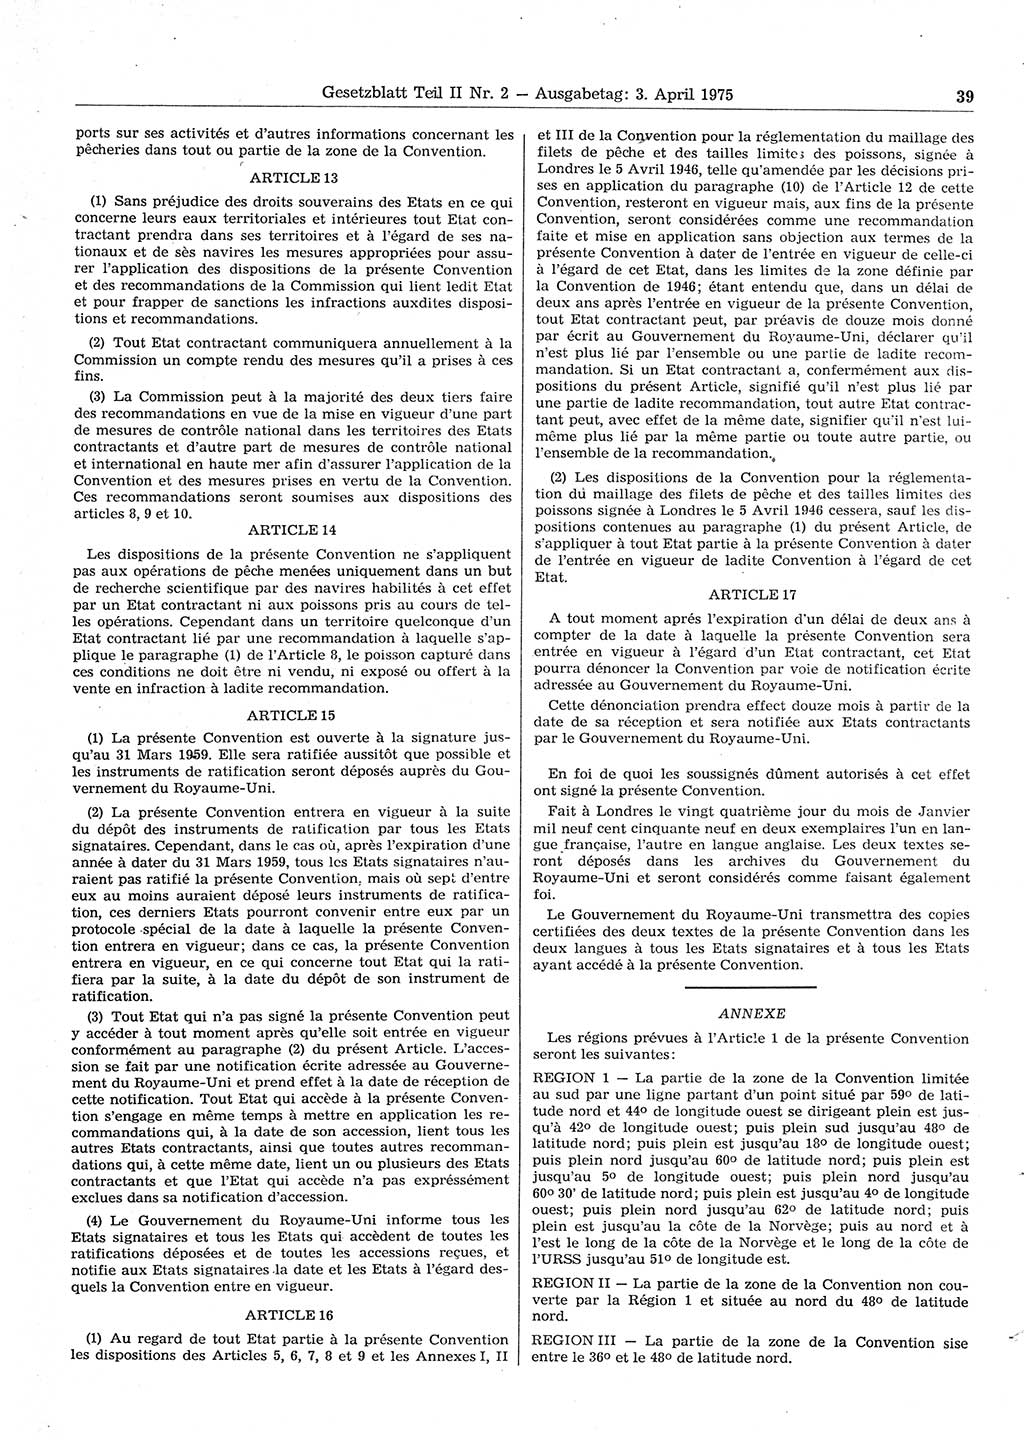 Gesetzblatt (GBl.) der Deutschen Demokratischen Republik (DDR) Teil ⅠⅠ 1975, Seite 39 (GBl. DDR ⅠⅠ 1975, S. 39)